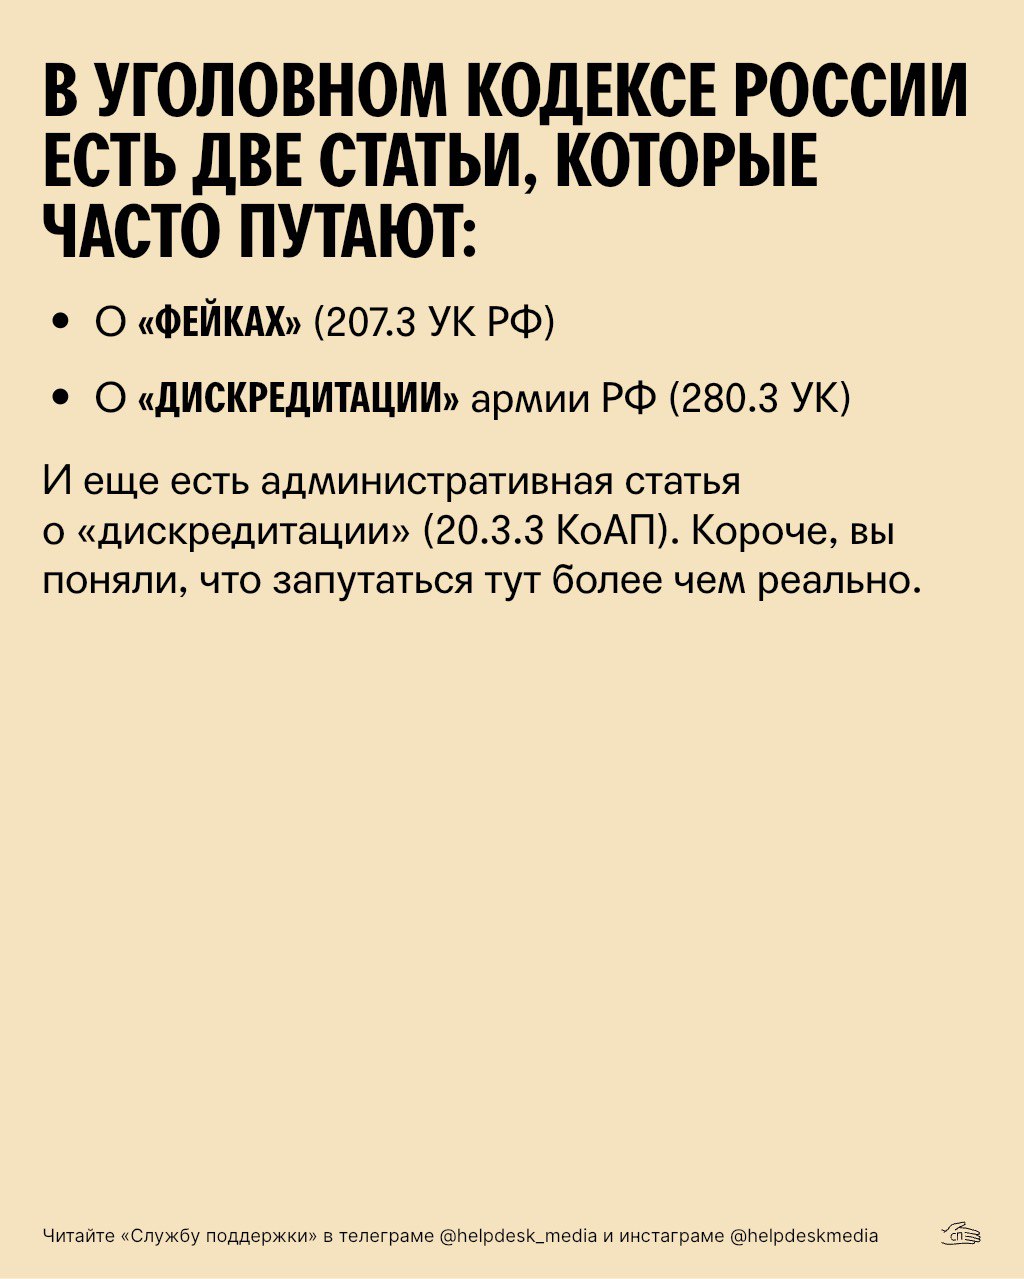 Телефон службы поддержки телеграмм в россии бесплатный фото 6